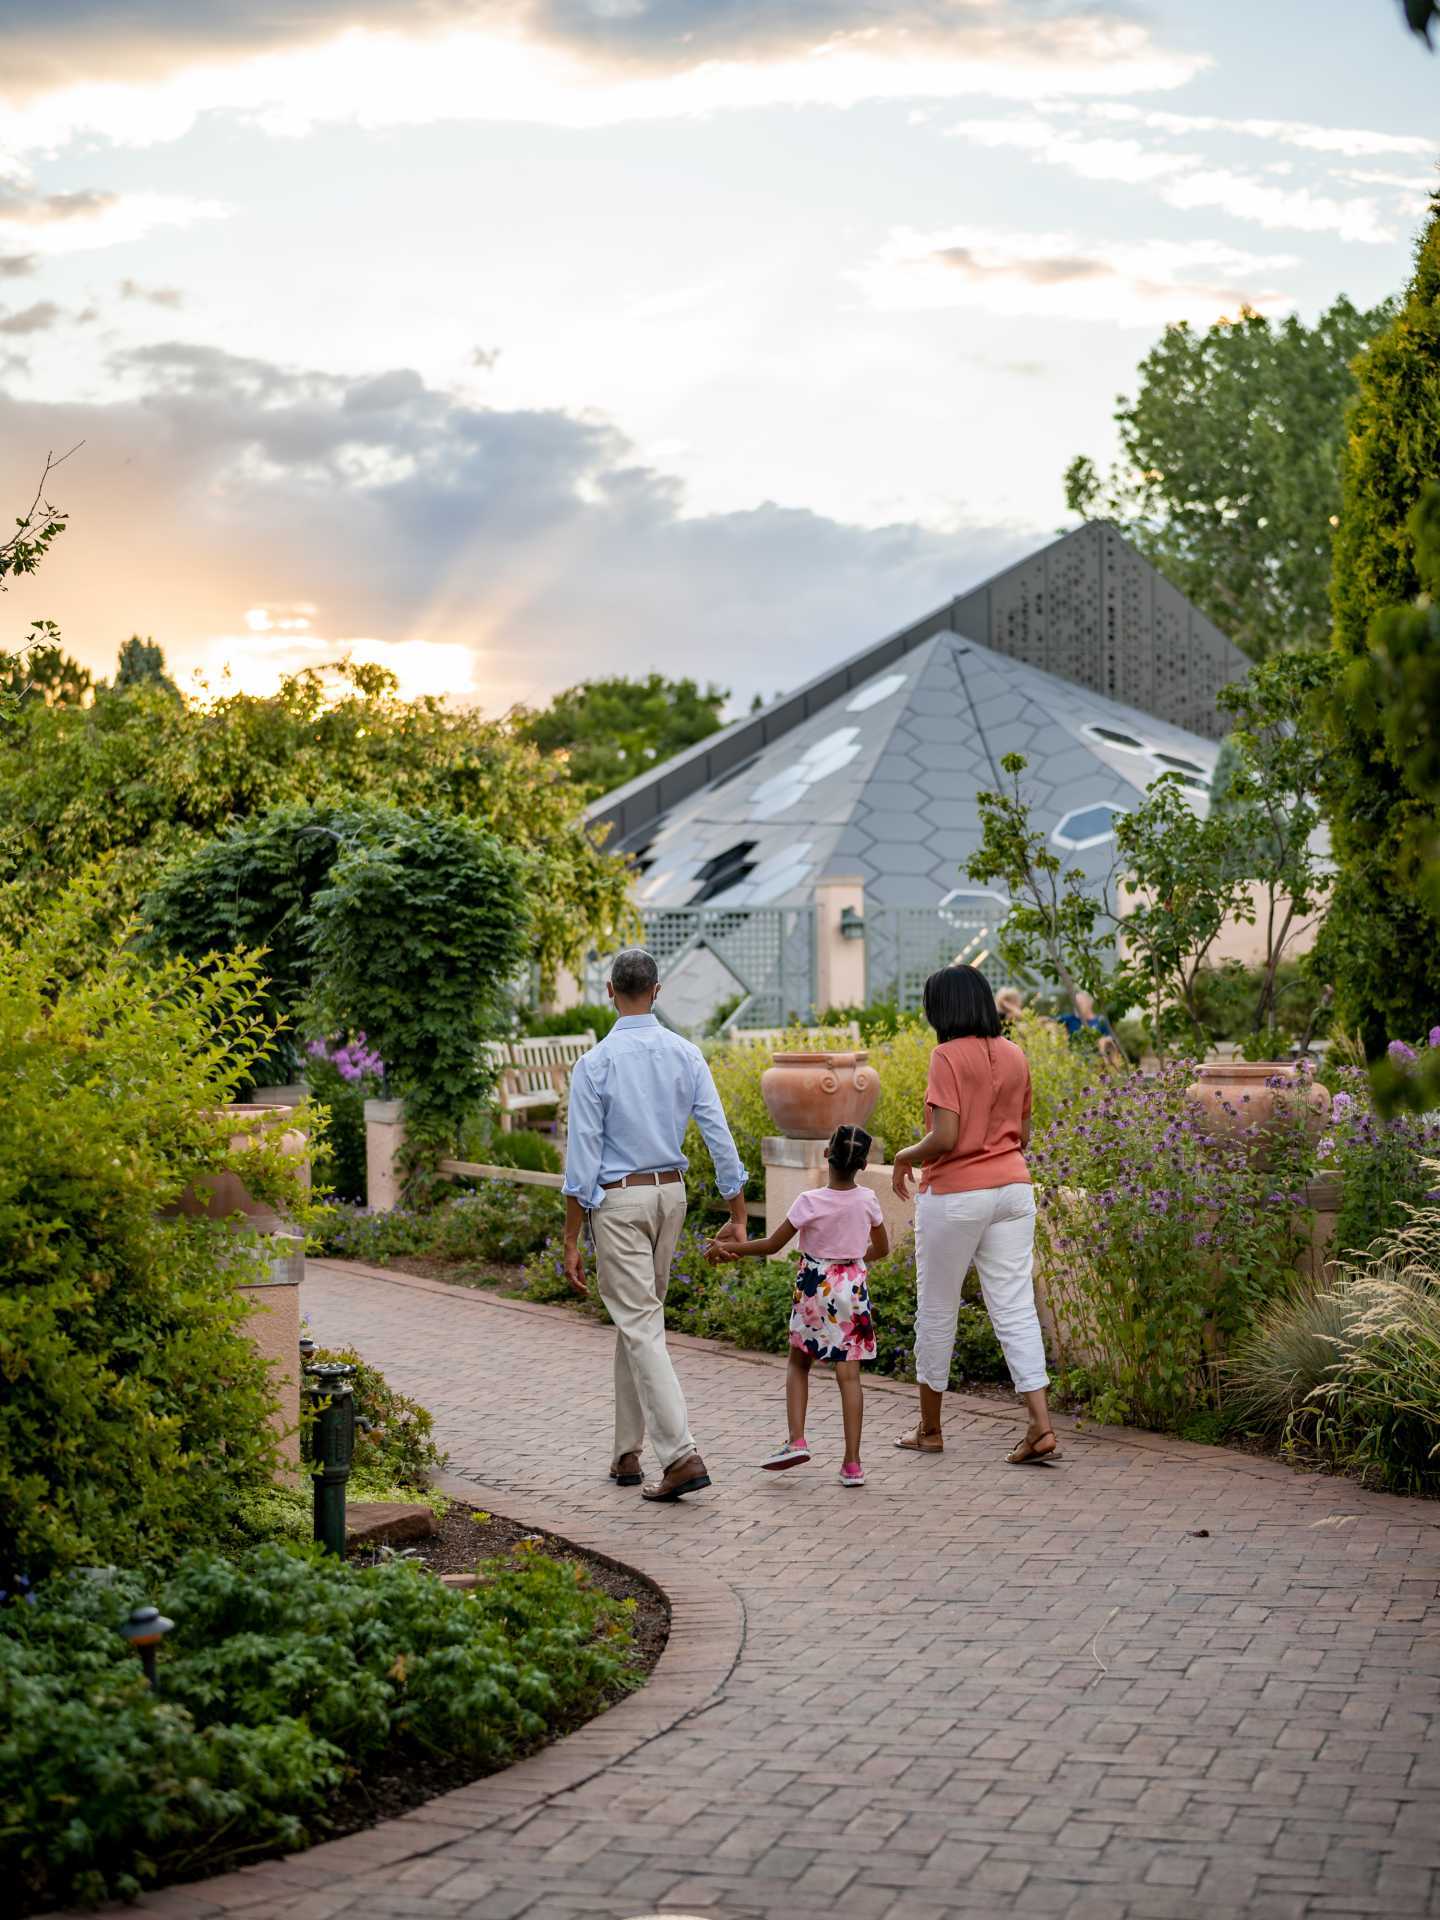 Denver, Colorado | A family walks through the Denver Botanic Gardens